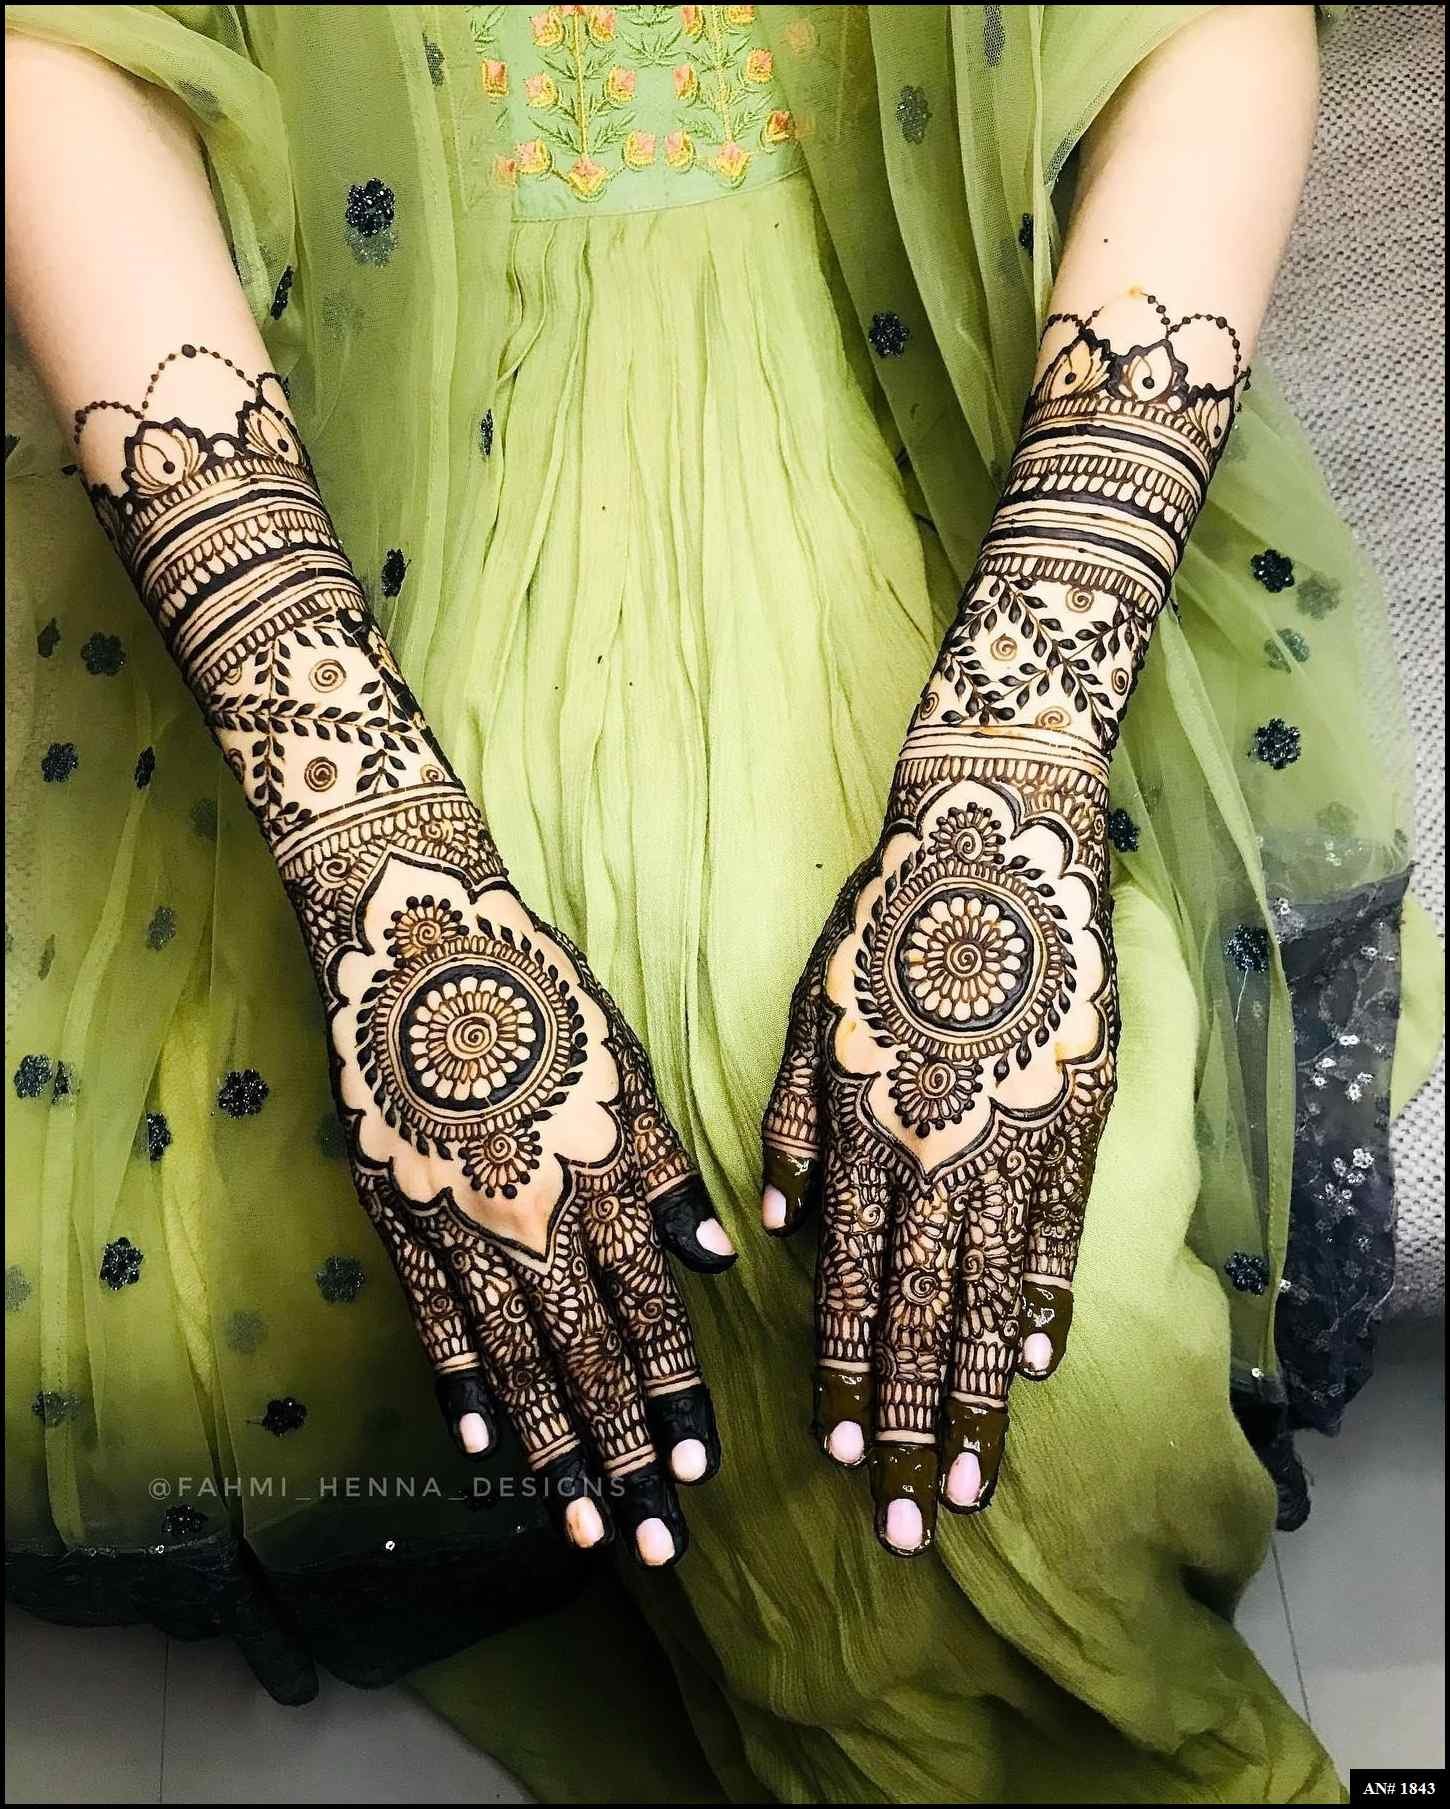 simple-bridal-henna